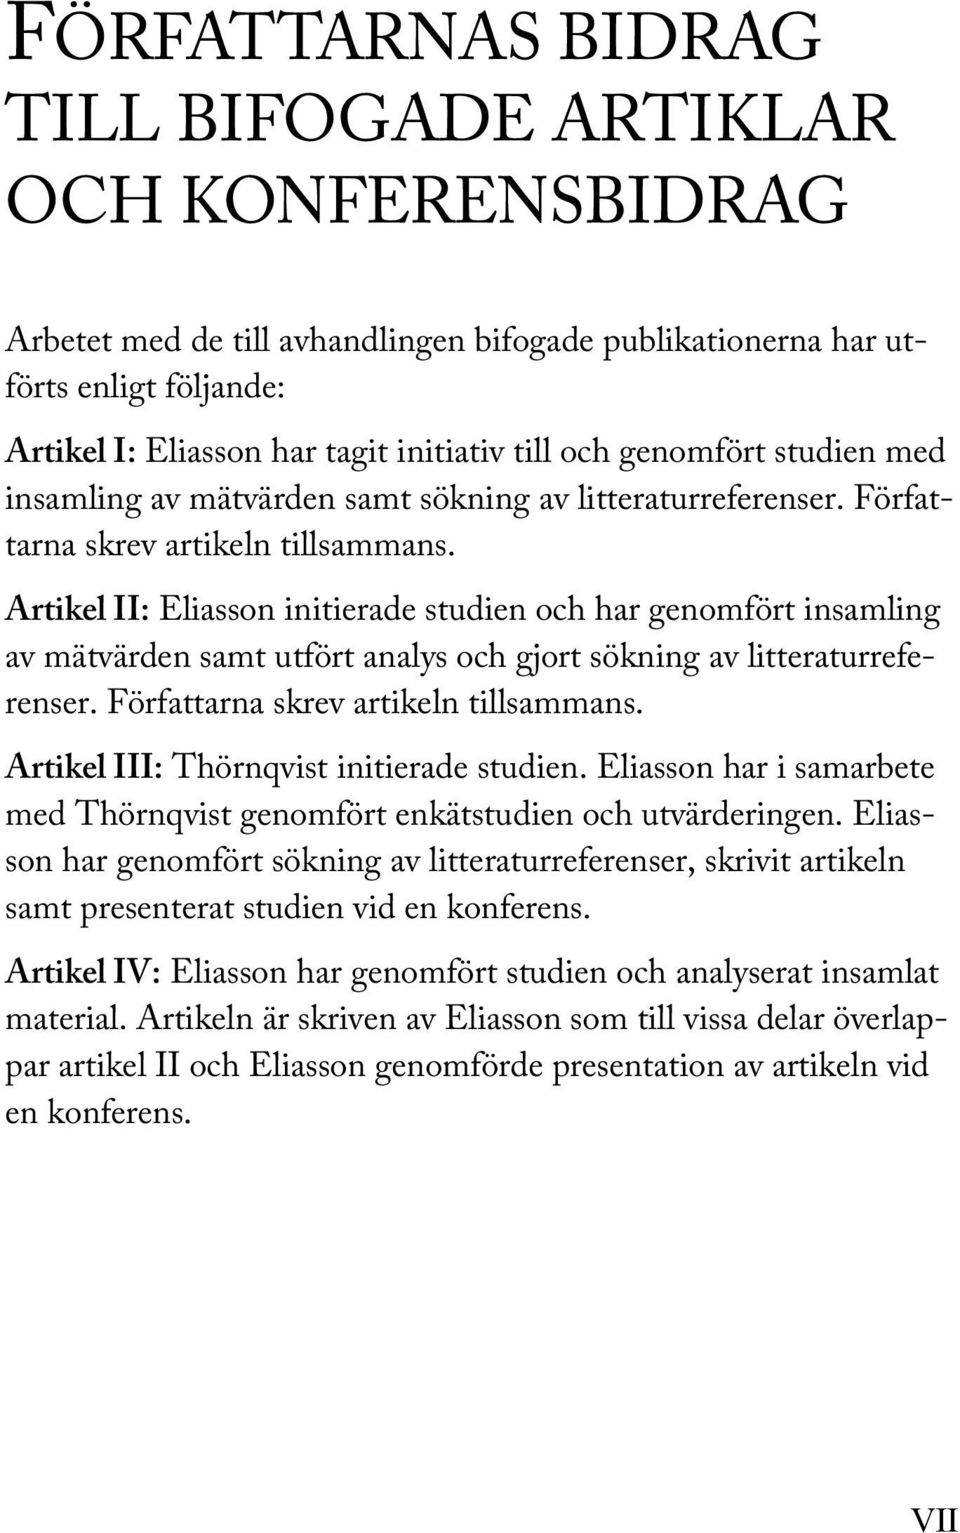 Artikel II: Eliasson initierade studien och har genomfört insamling av mätvärden samt utfört analys och gjort sökning av litteraturreferenser. Författarna skrev artikeln tillsammans.